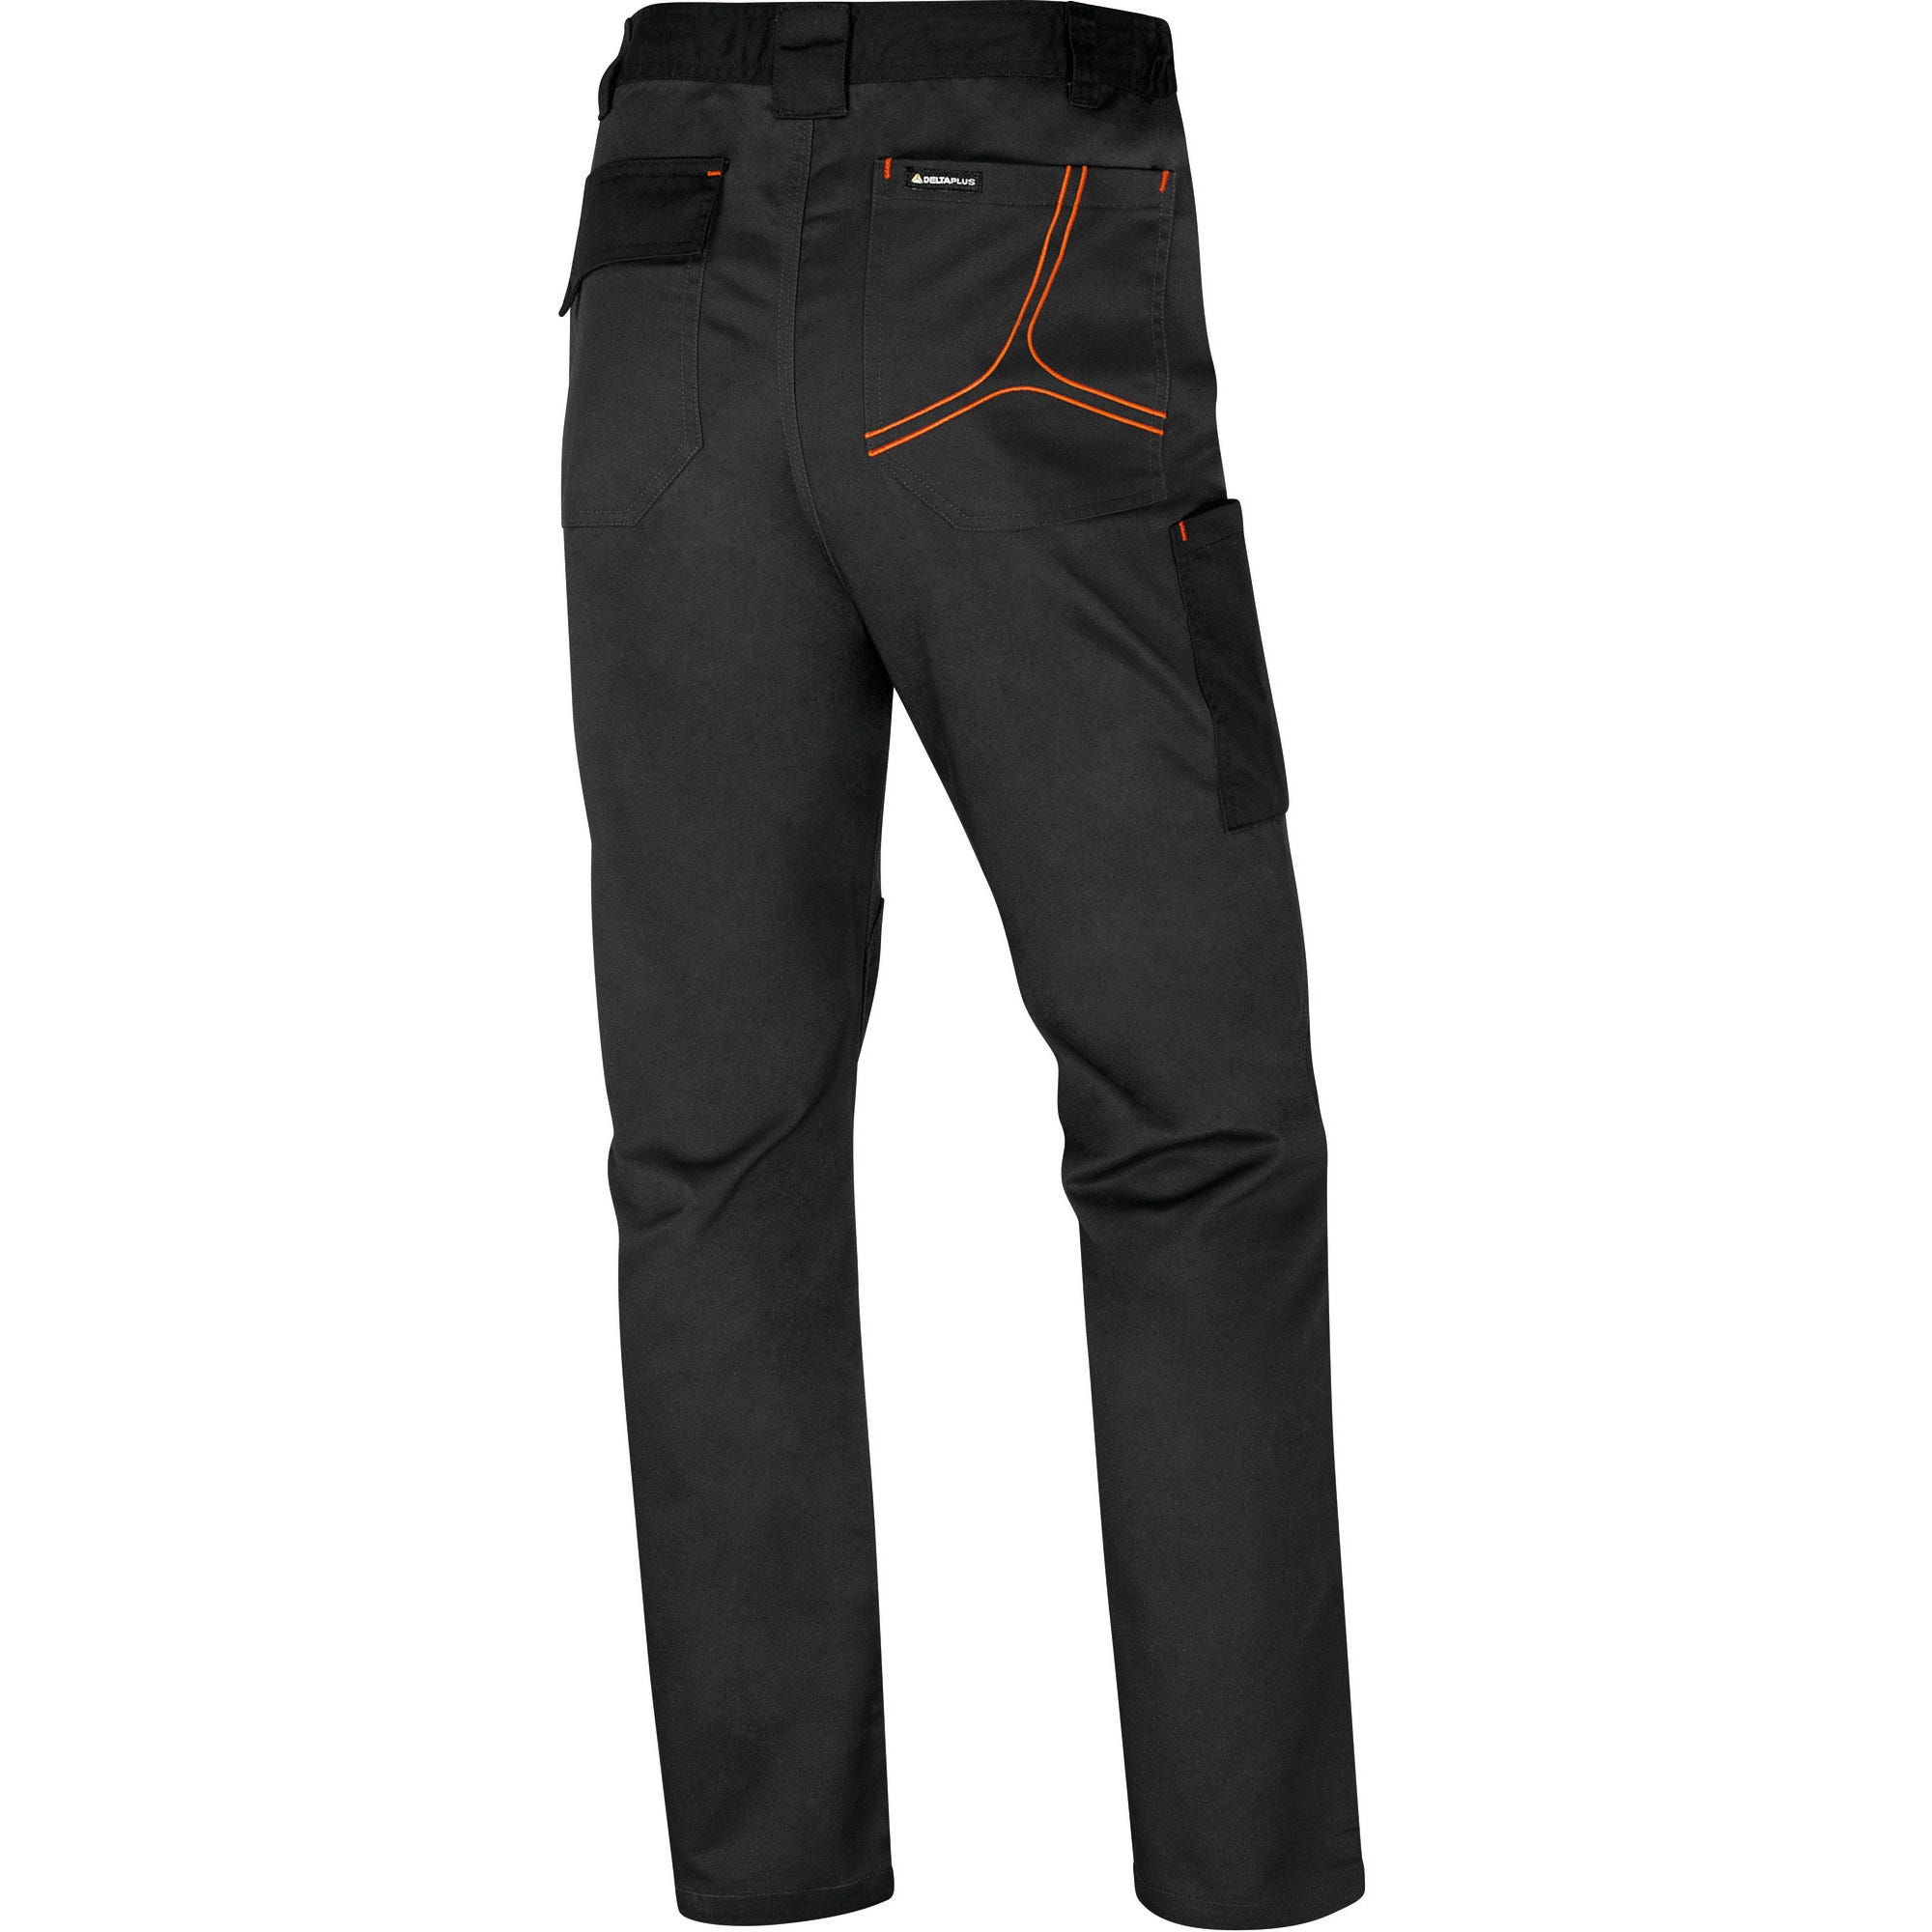 Pantalon de travail Gris/Orange T.4XL MACH2 - DELTA PLUS 1